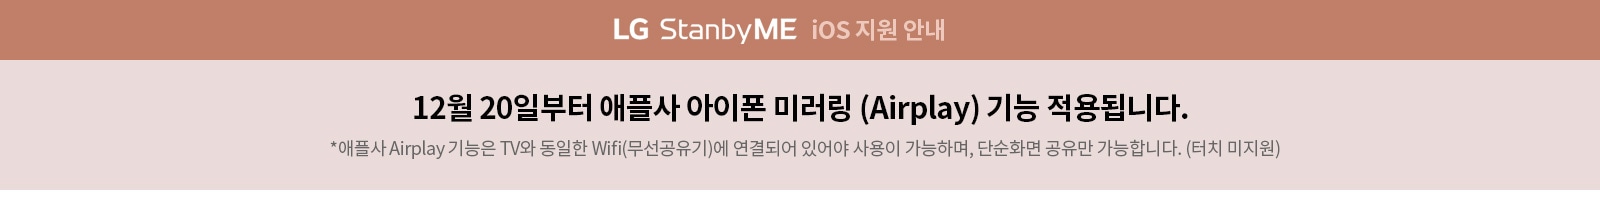 LG StanbyME ios 지원계획 안내 21년 내 소프트웨어 업데이트 통한 Appple iOS (Airplay) 지원 예정 (기존 판매제품 포함, 자세한 내용은 추후 공지예정)